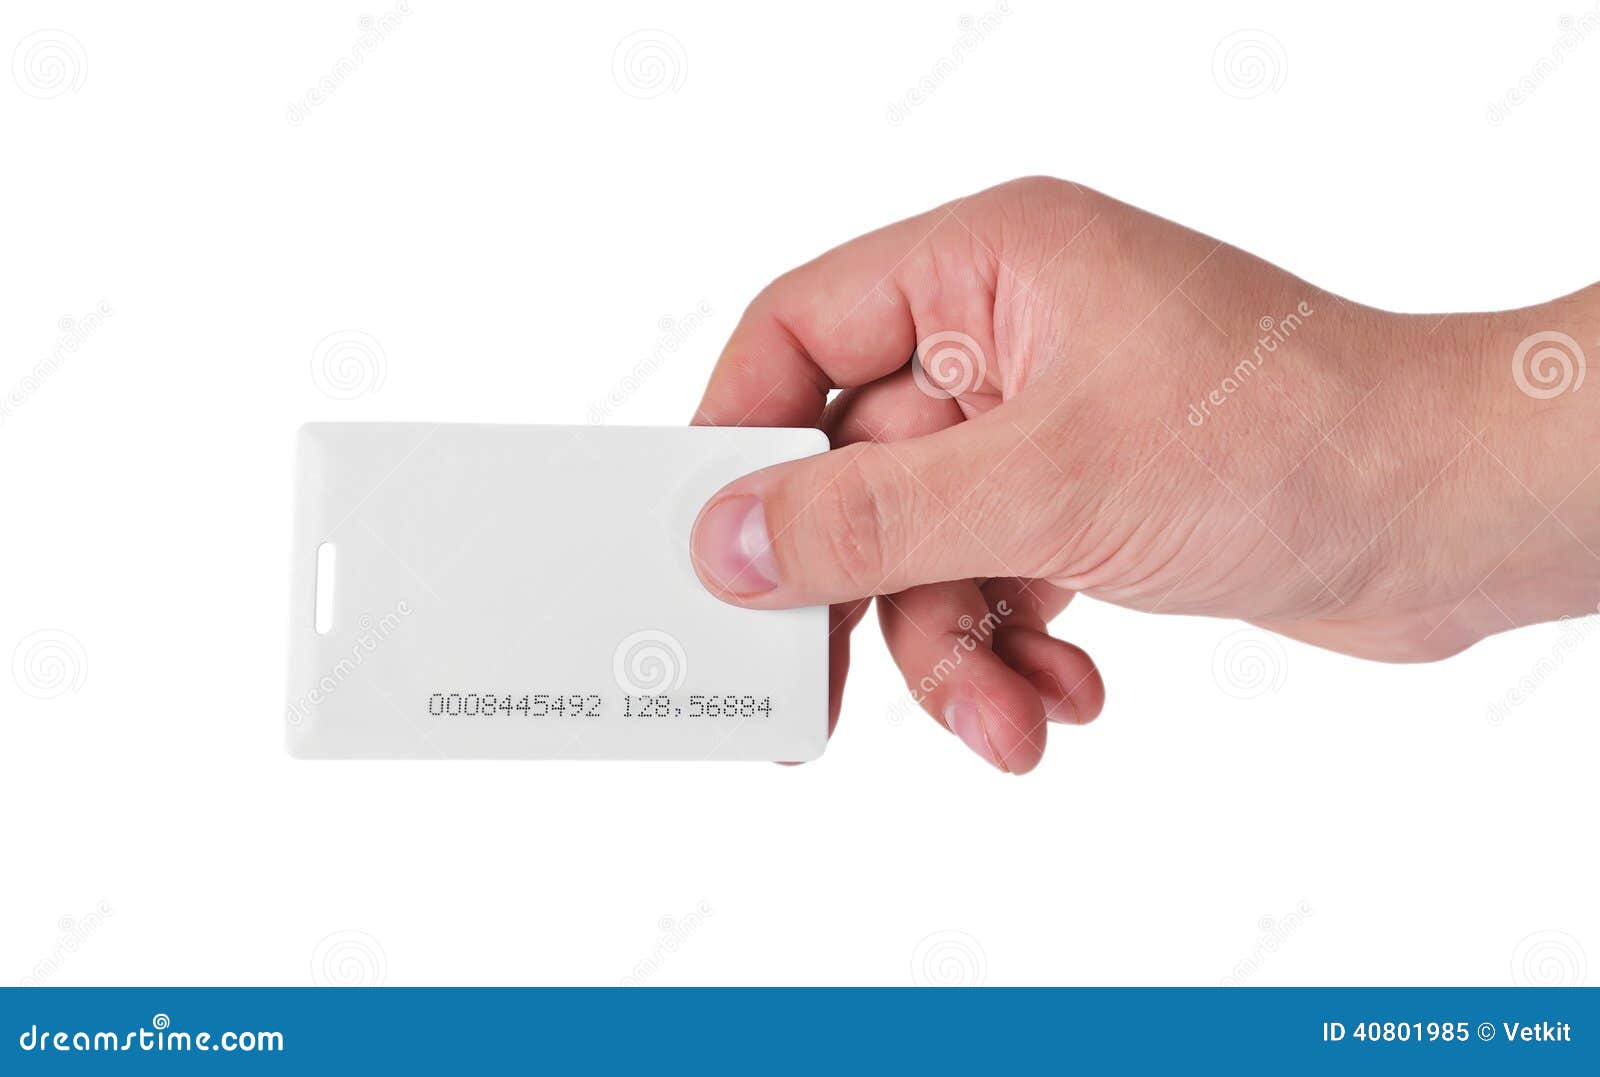 Бесконтактные RFID карты в руке